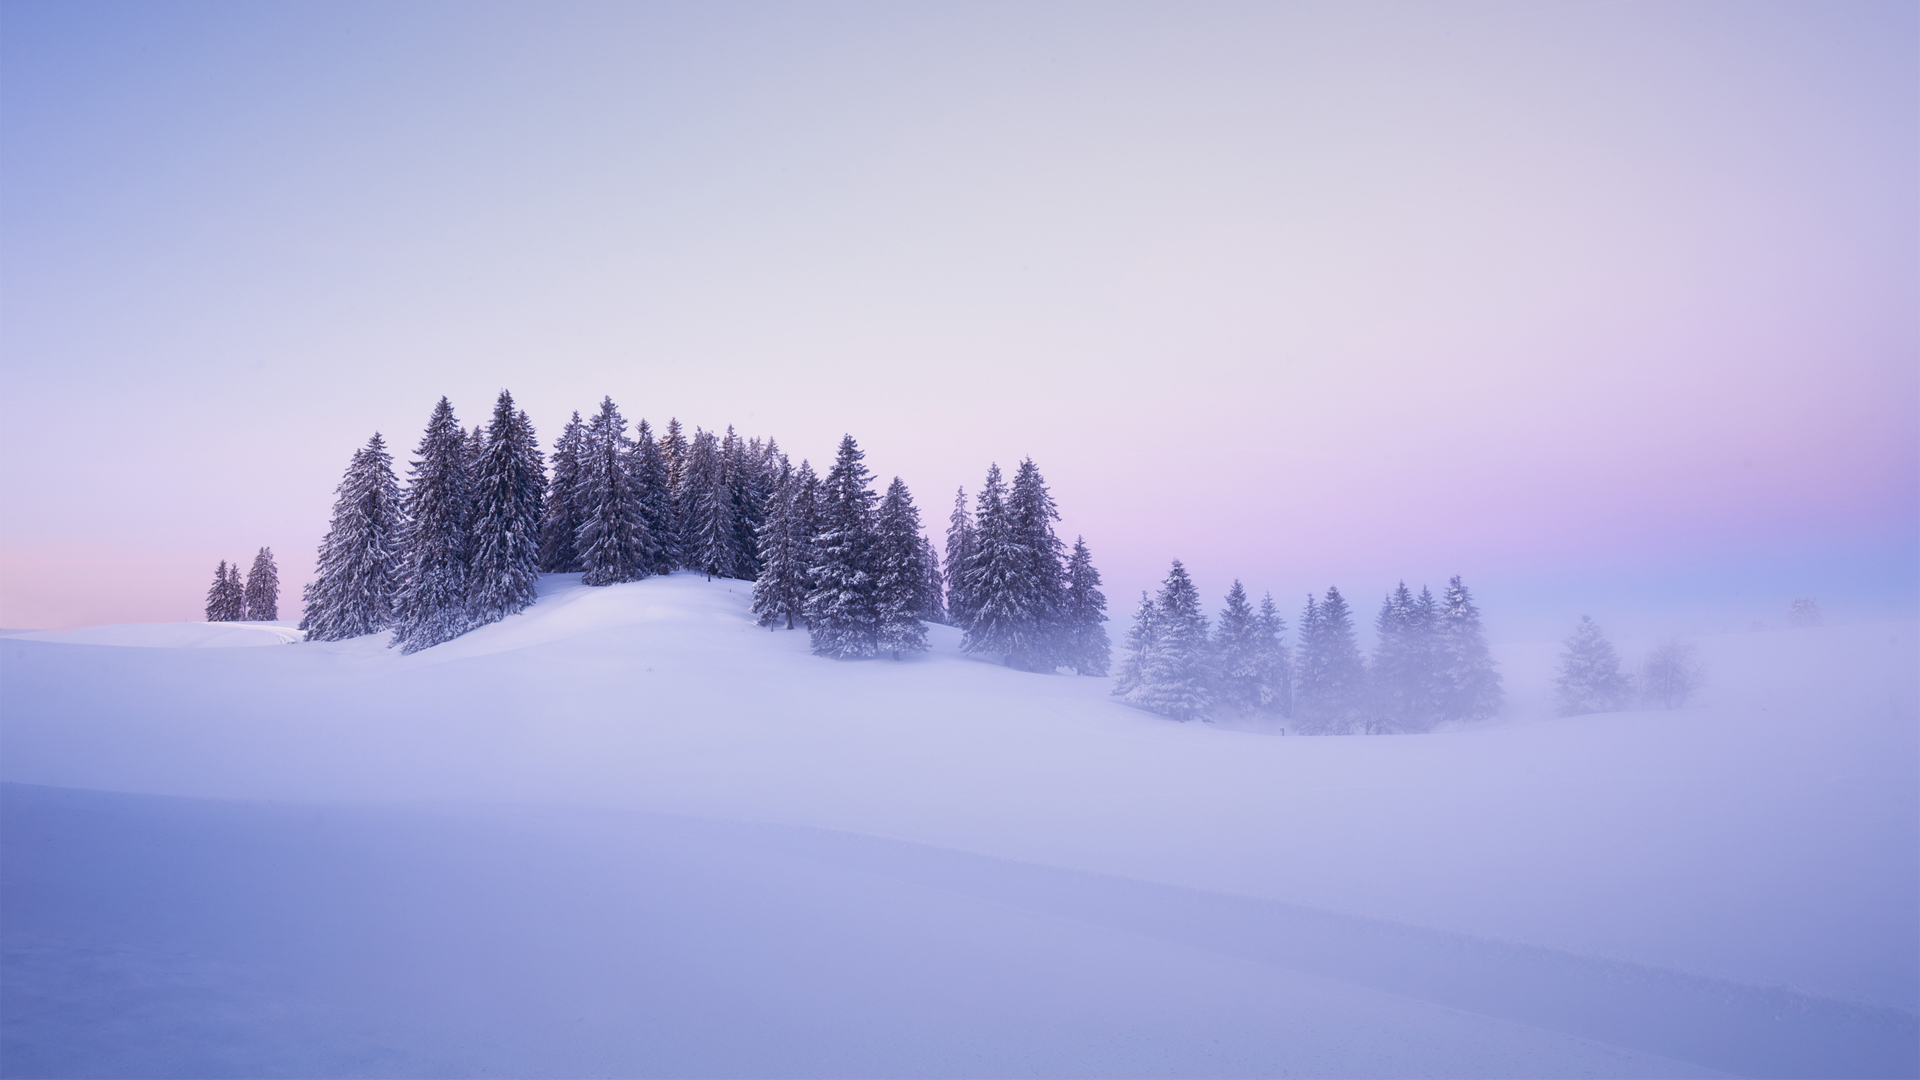 瑞士冬季 雪 树木 冬天自然风景壁纸